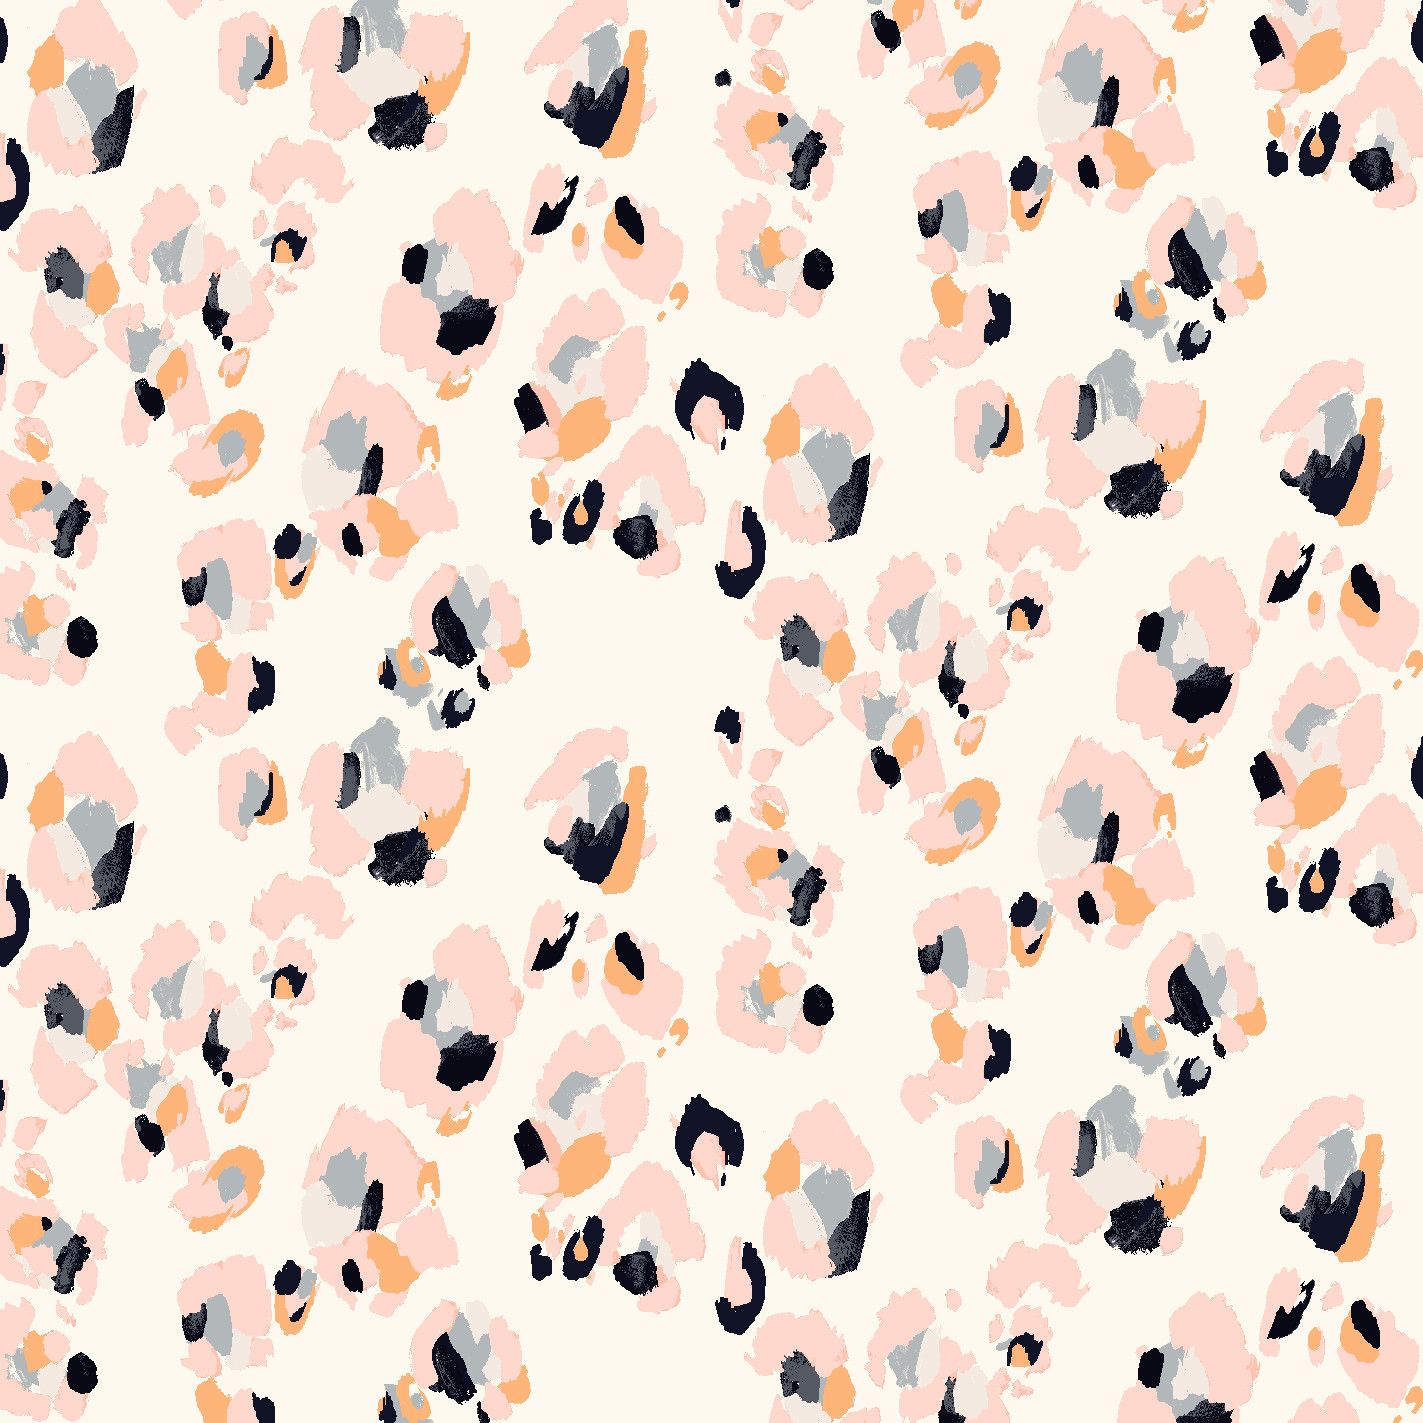 pink cheetah print wallpaper for iphone